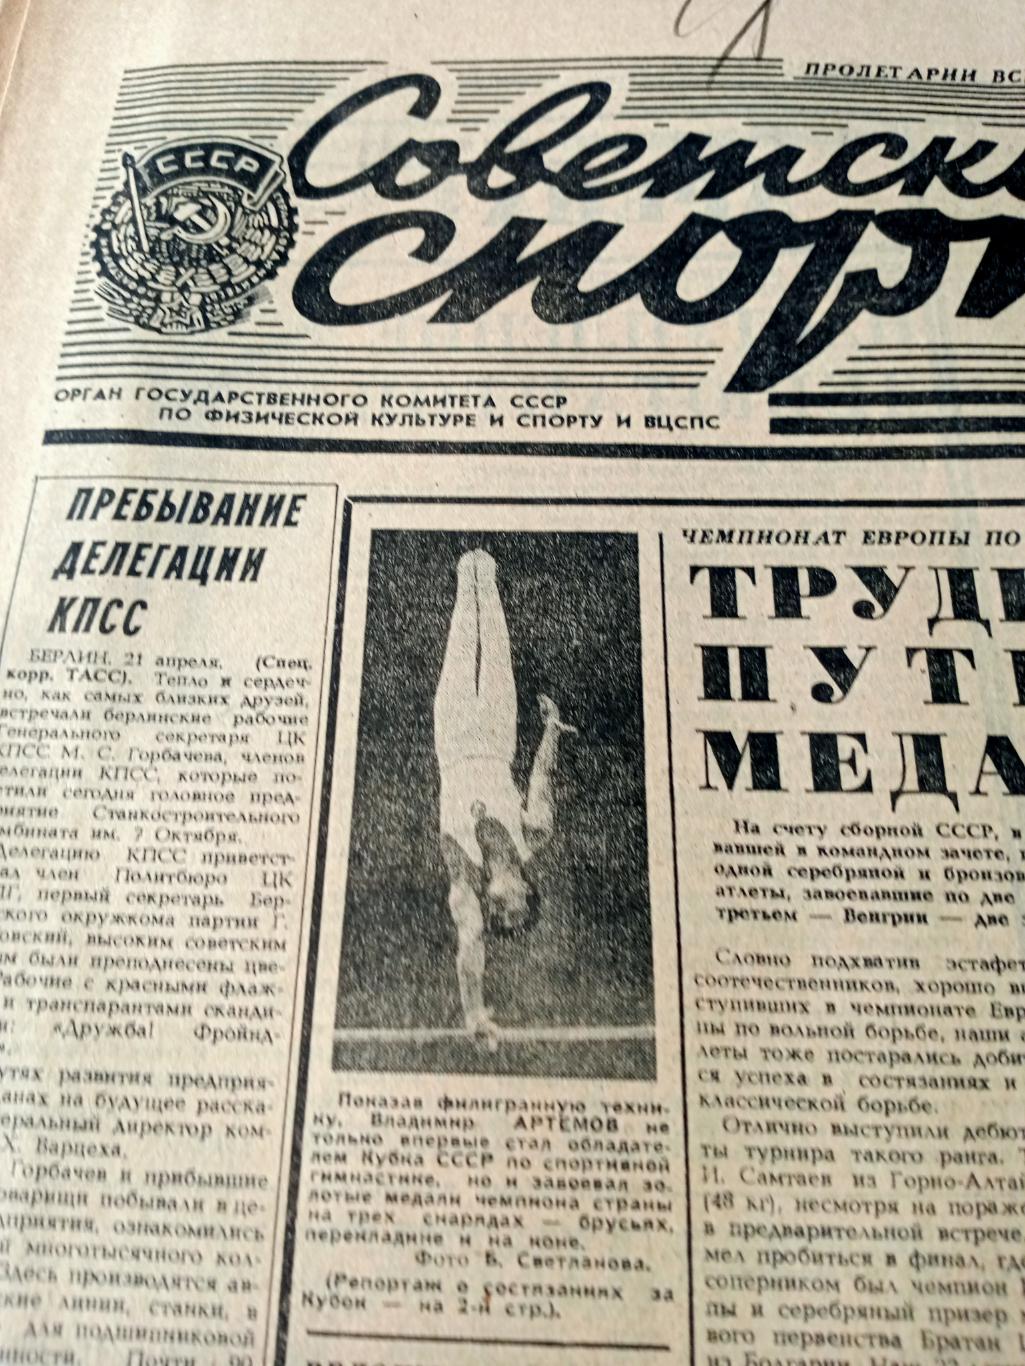 Трудный путь к медалям. Советский спорт. 1985 год. 22 апреля